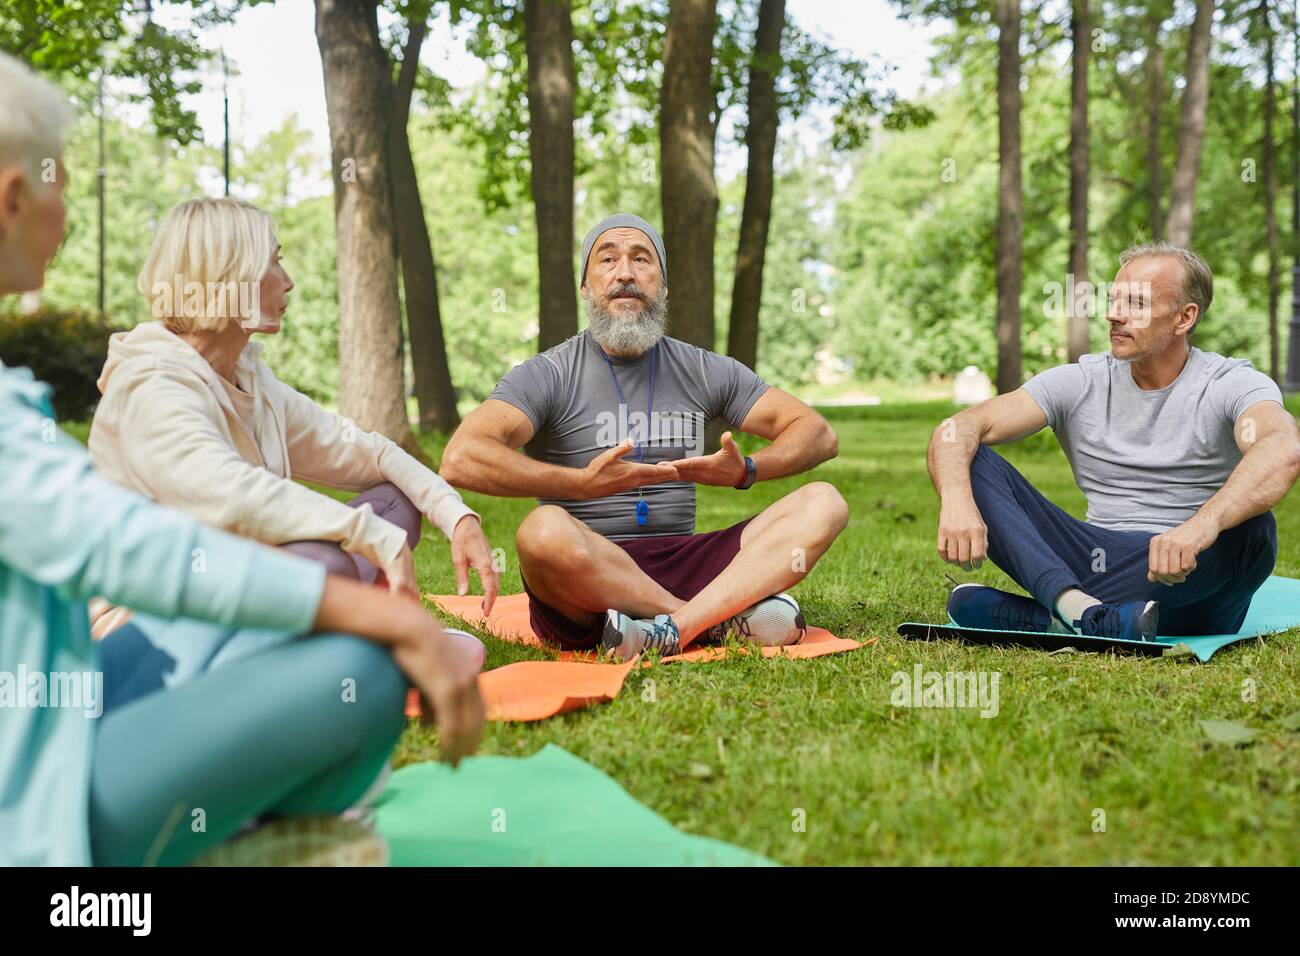 Elegante allenatore di yoga con la bearded seduto sul tappetino che dimostra il suo anziano i clienti come fare esercizio respiratorio Foto Stock